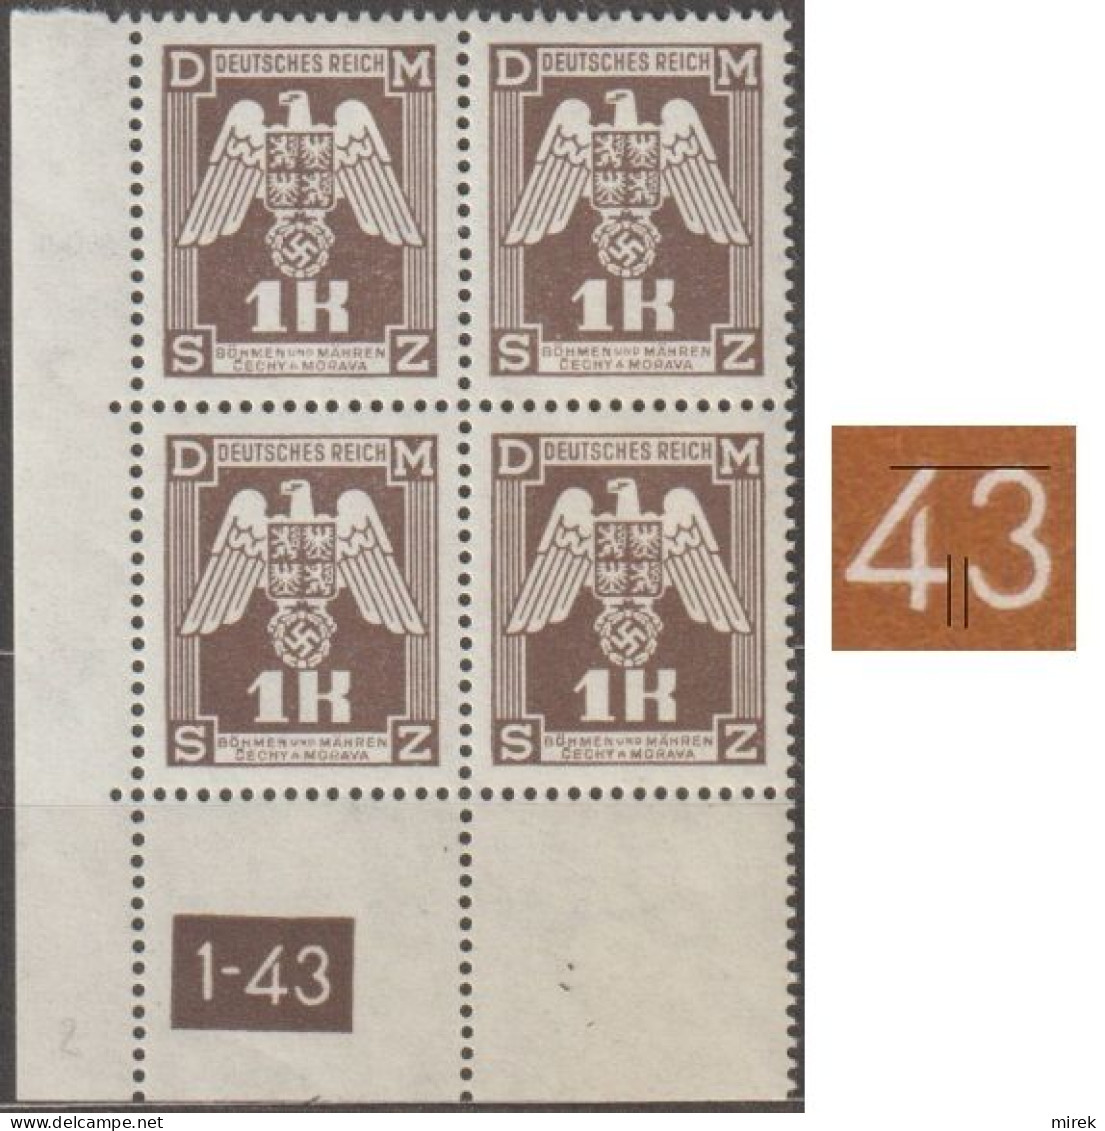 040/ Pof. SL 18, Corner 4-block, Plate Number 1-43, Type 1, Var. 2 - Unused Stamps